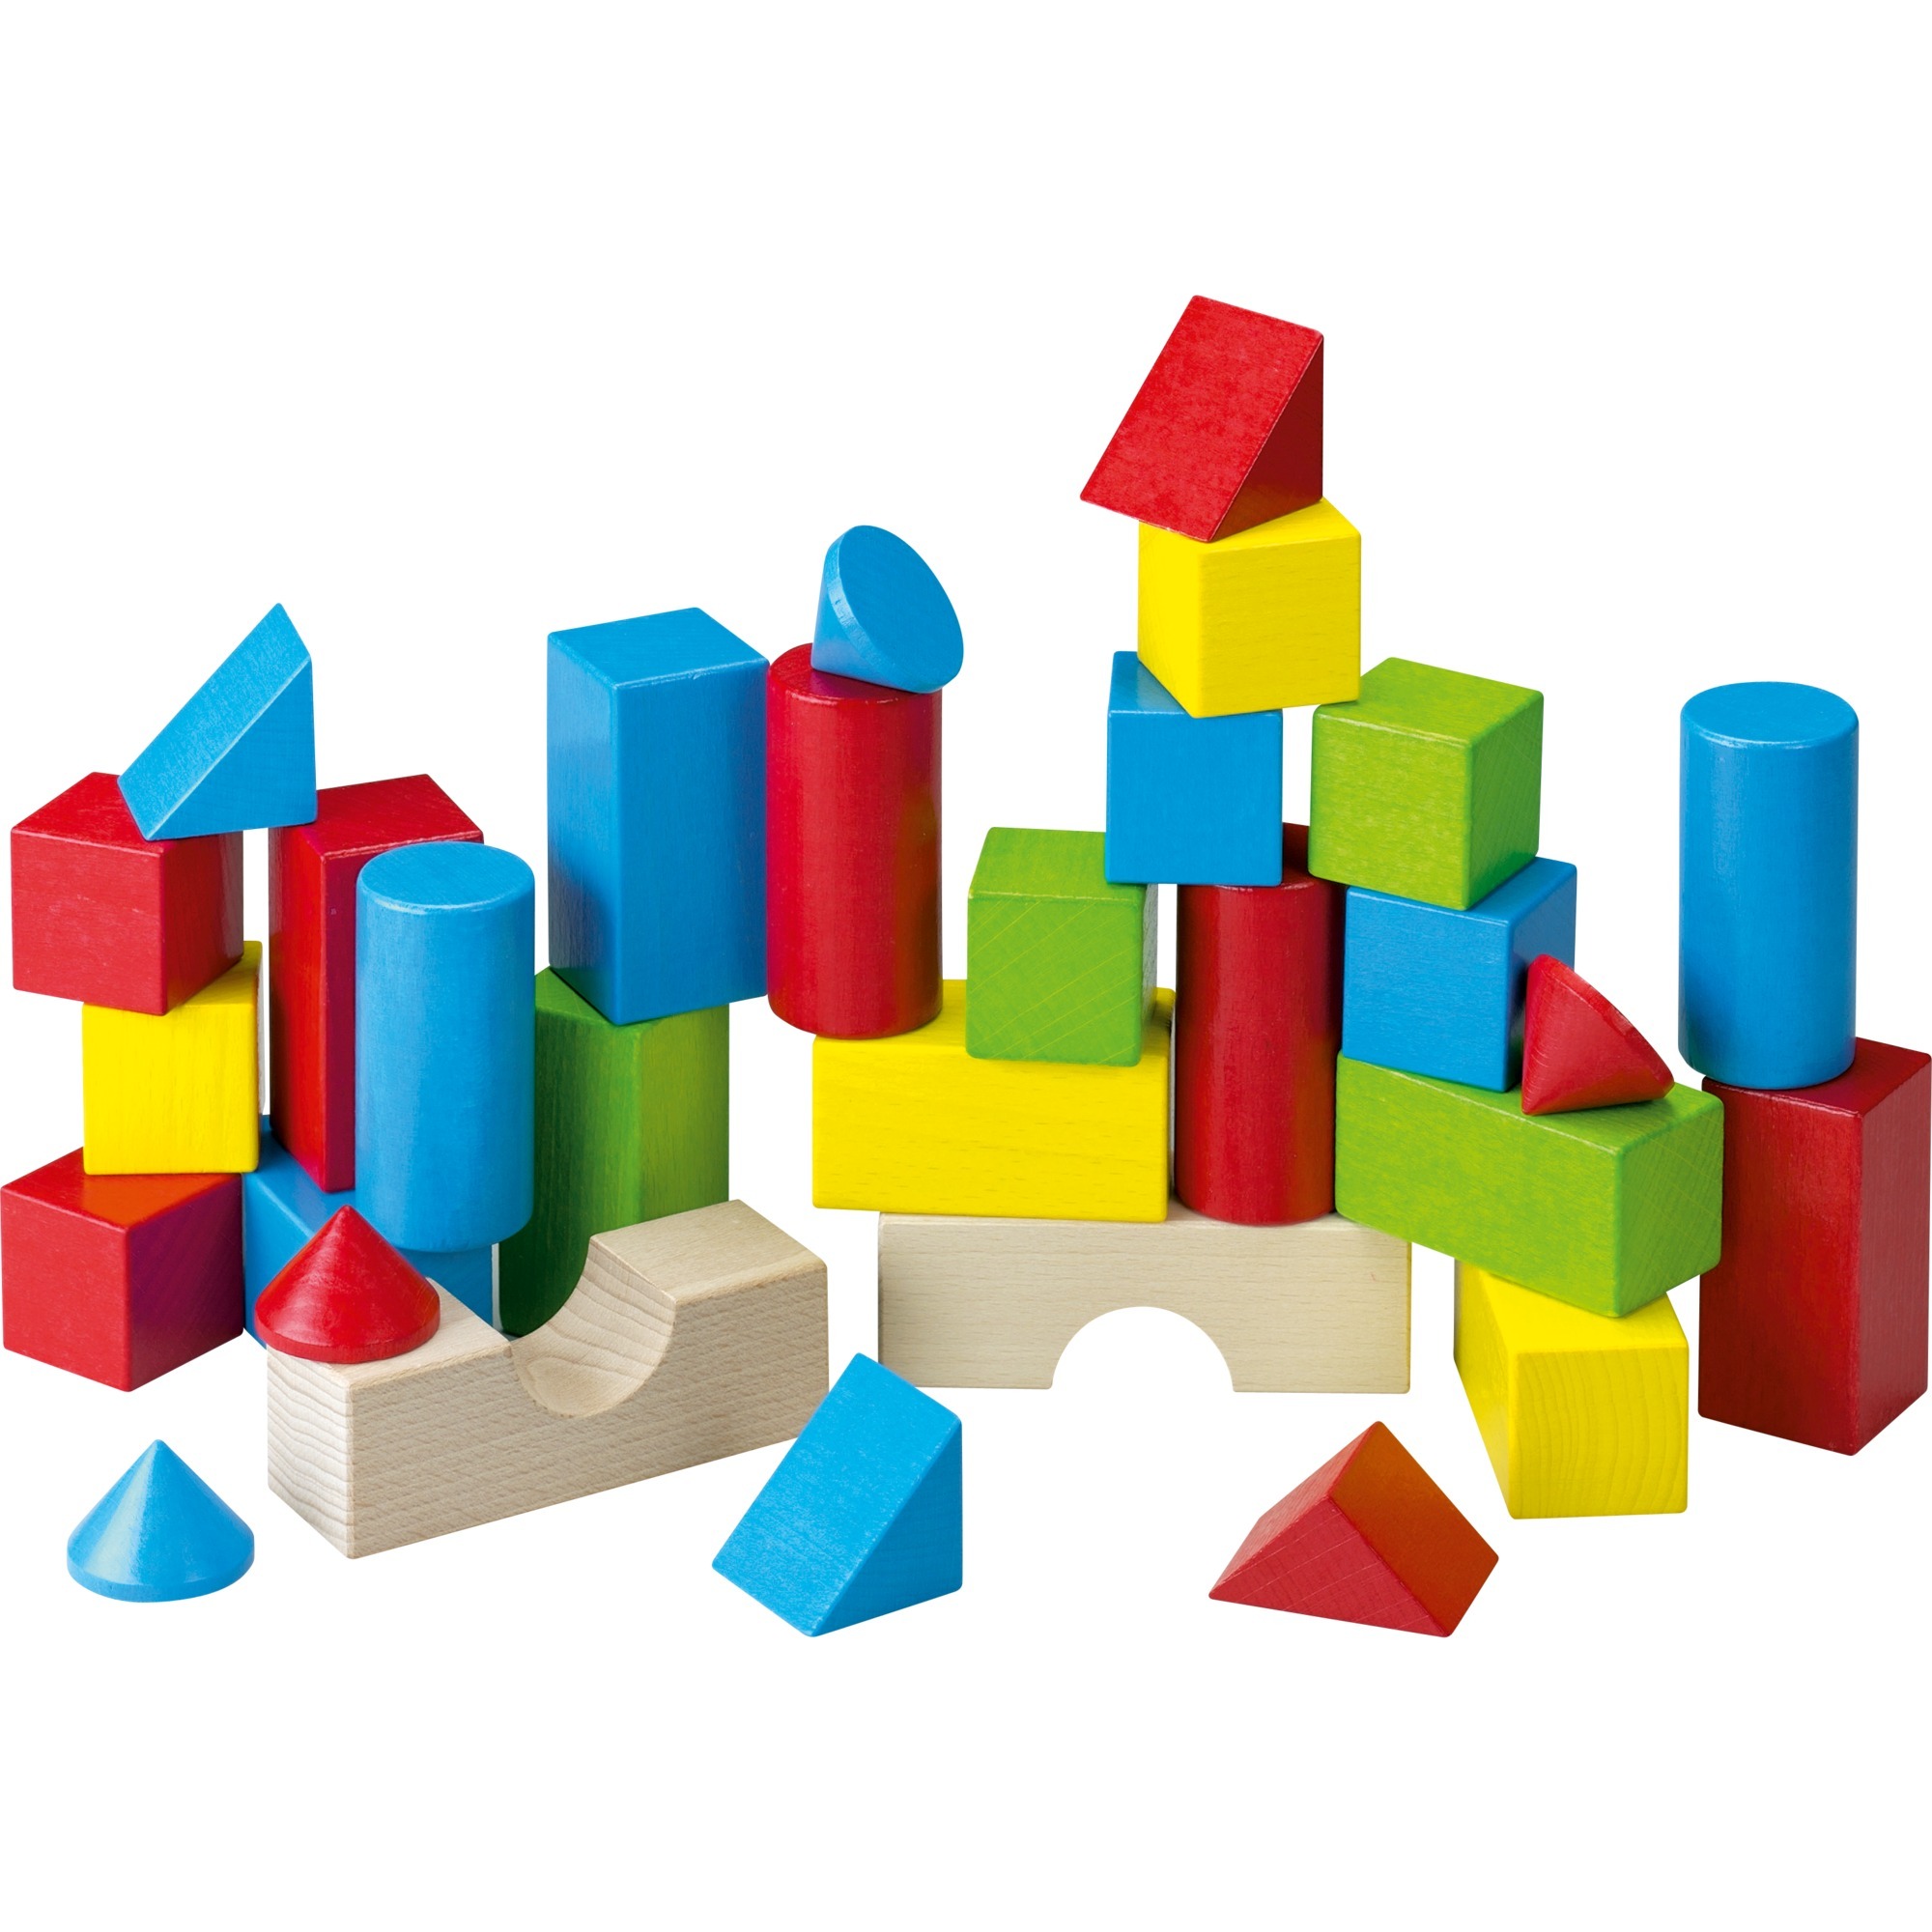 Image of Alternate - Farbige Steine, Konstruktionsspielzeug online einkaufen bei Alternate